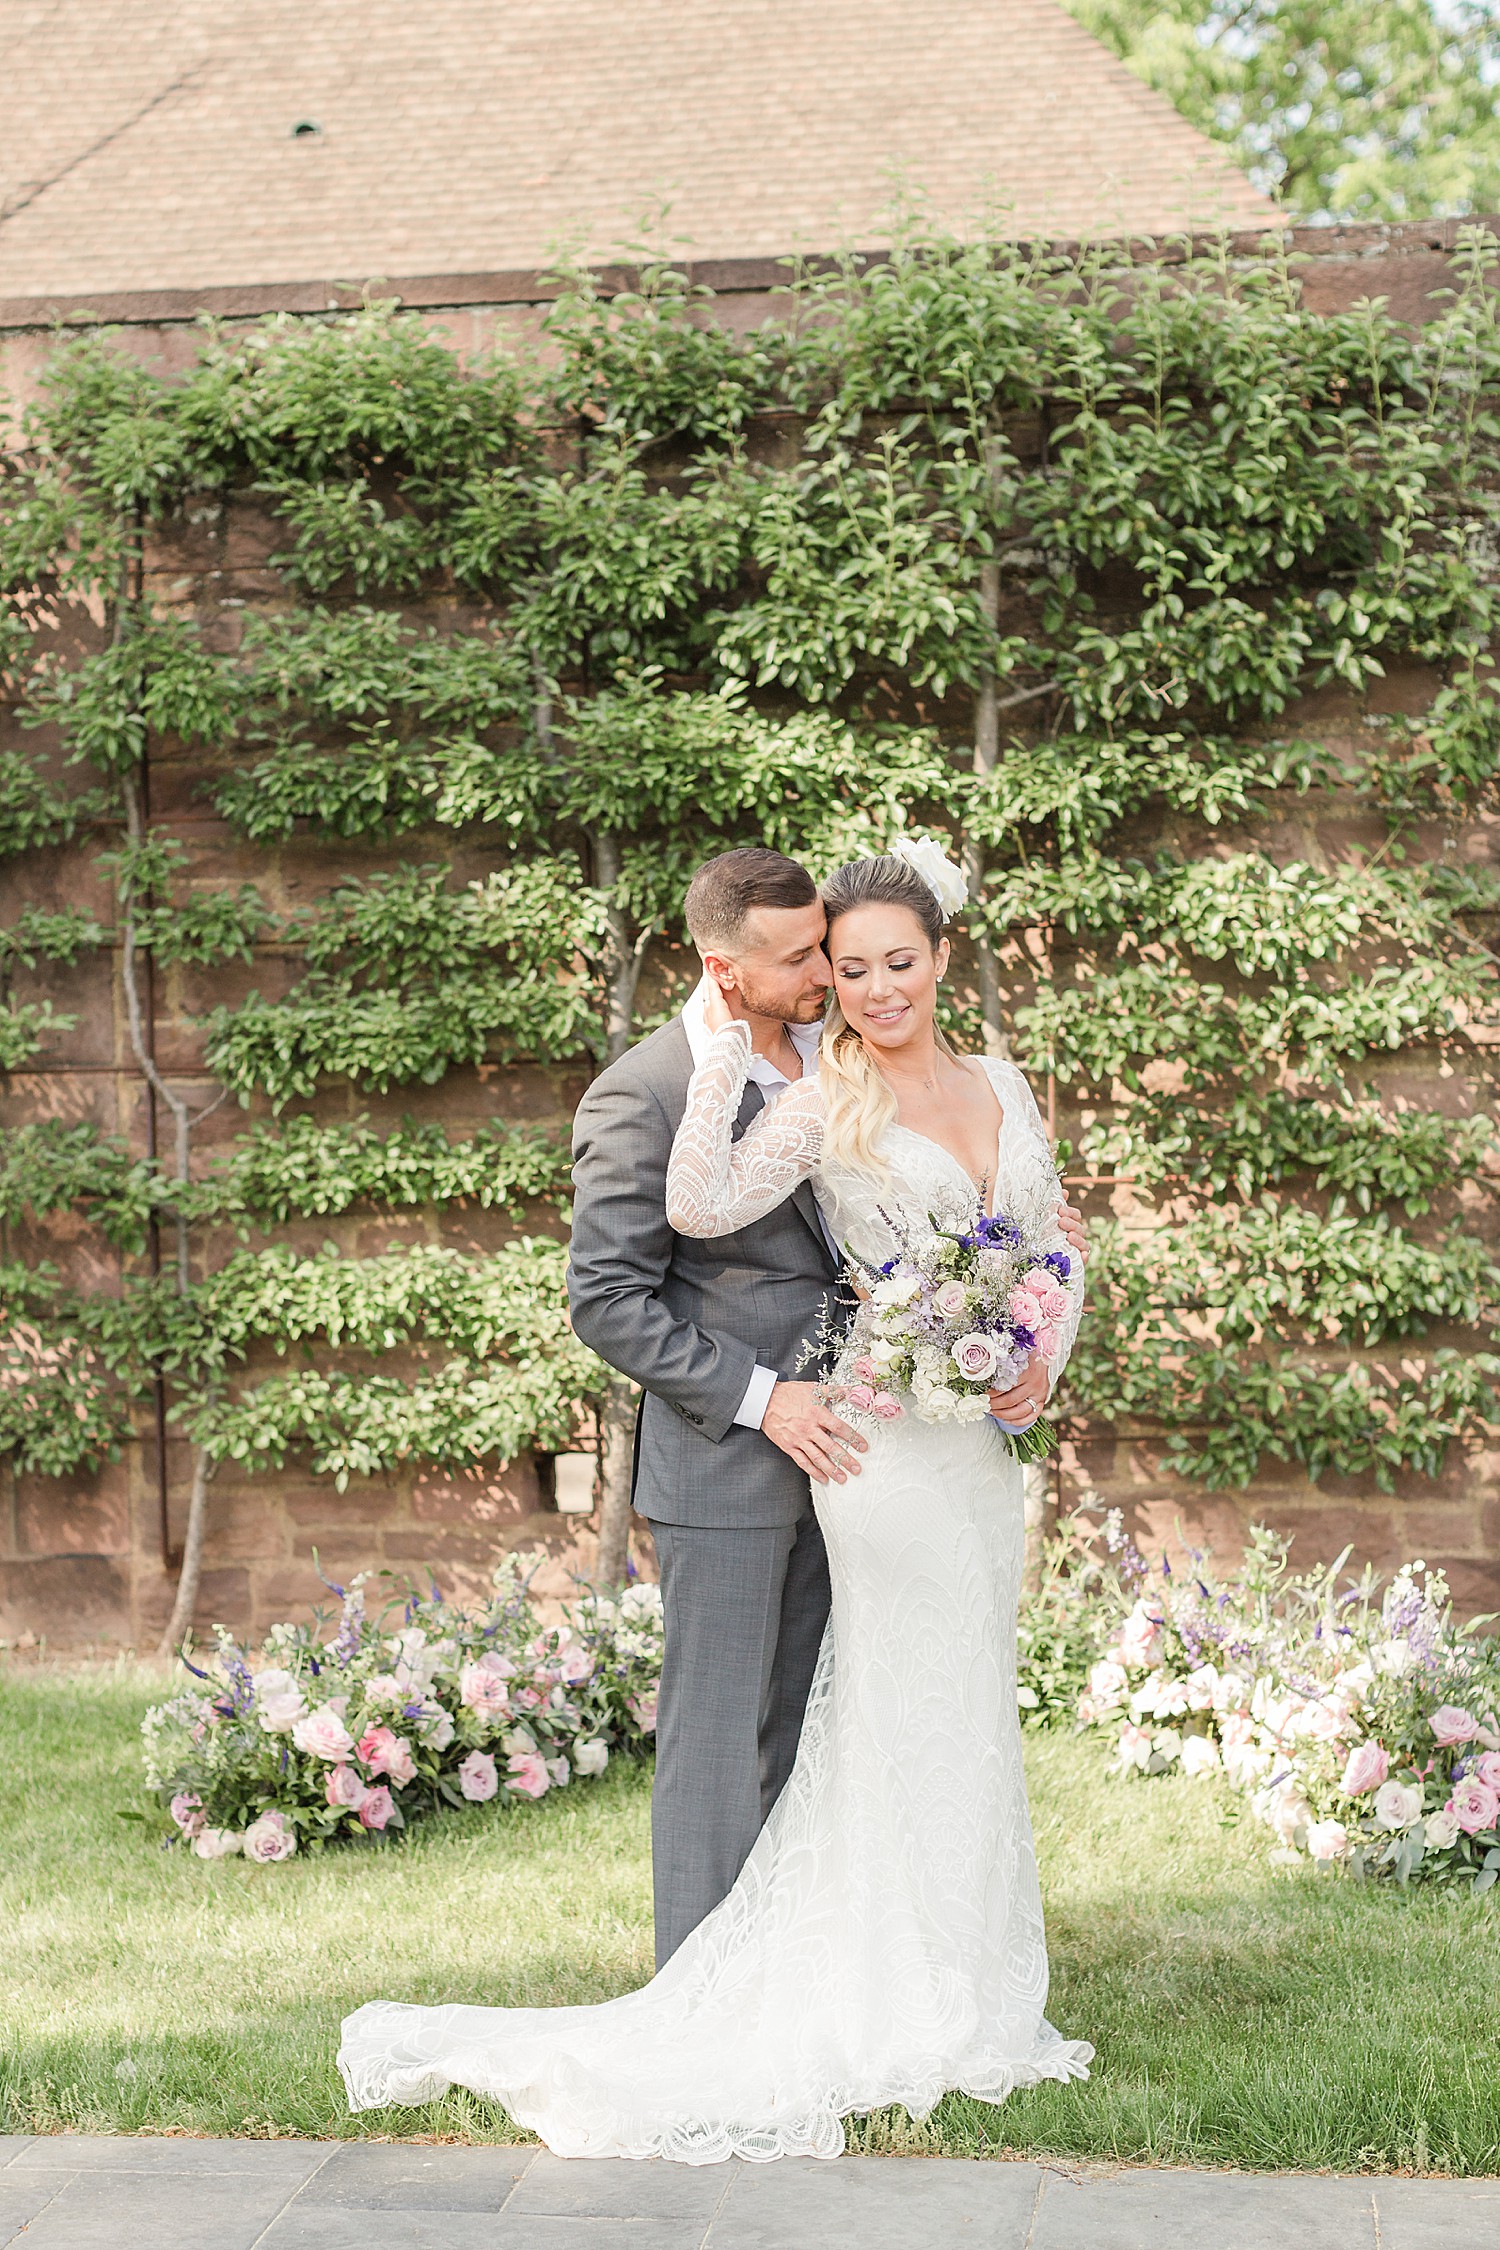 Elegant European-Inspired Wedding at Tyler Gardens | Styled Shoot